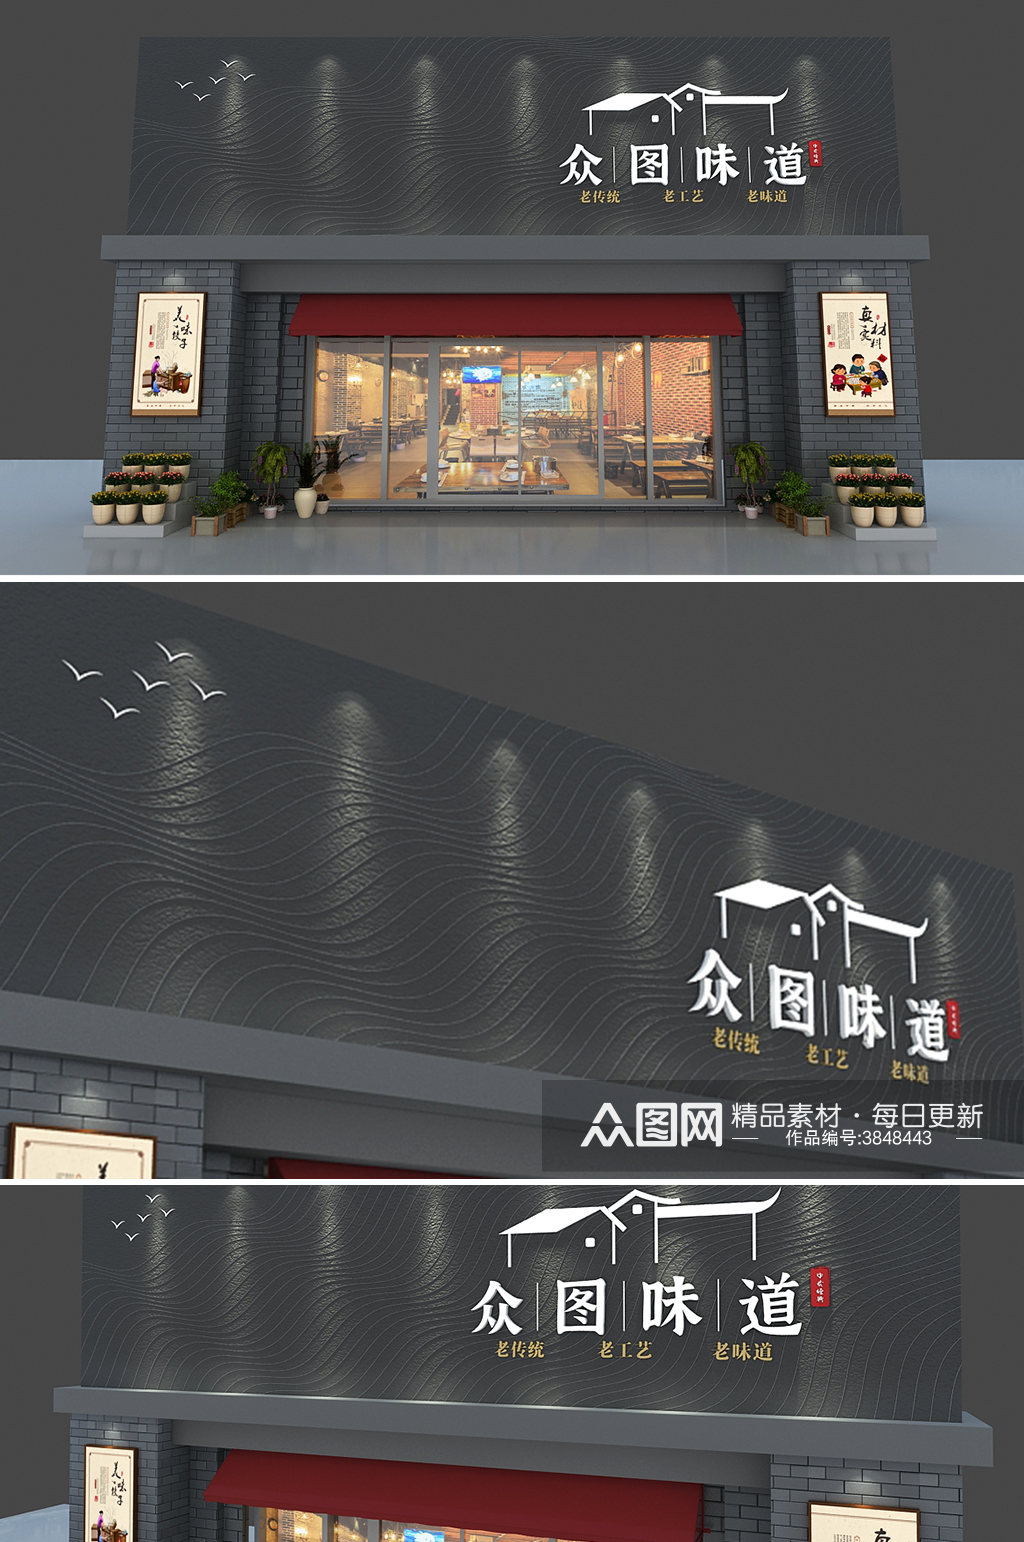 中式大气餐饮门头招牌店面设计 招牌素材